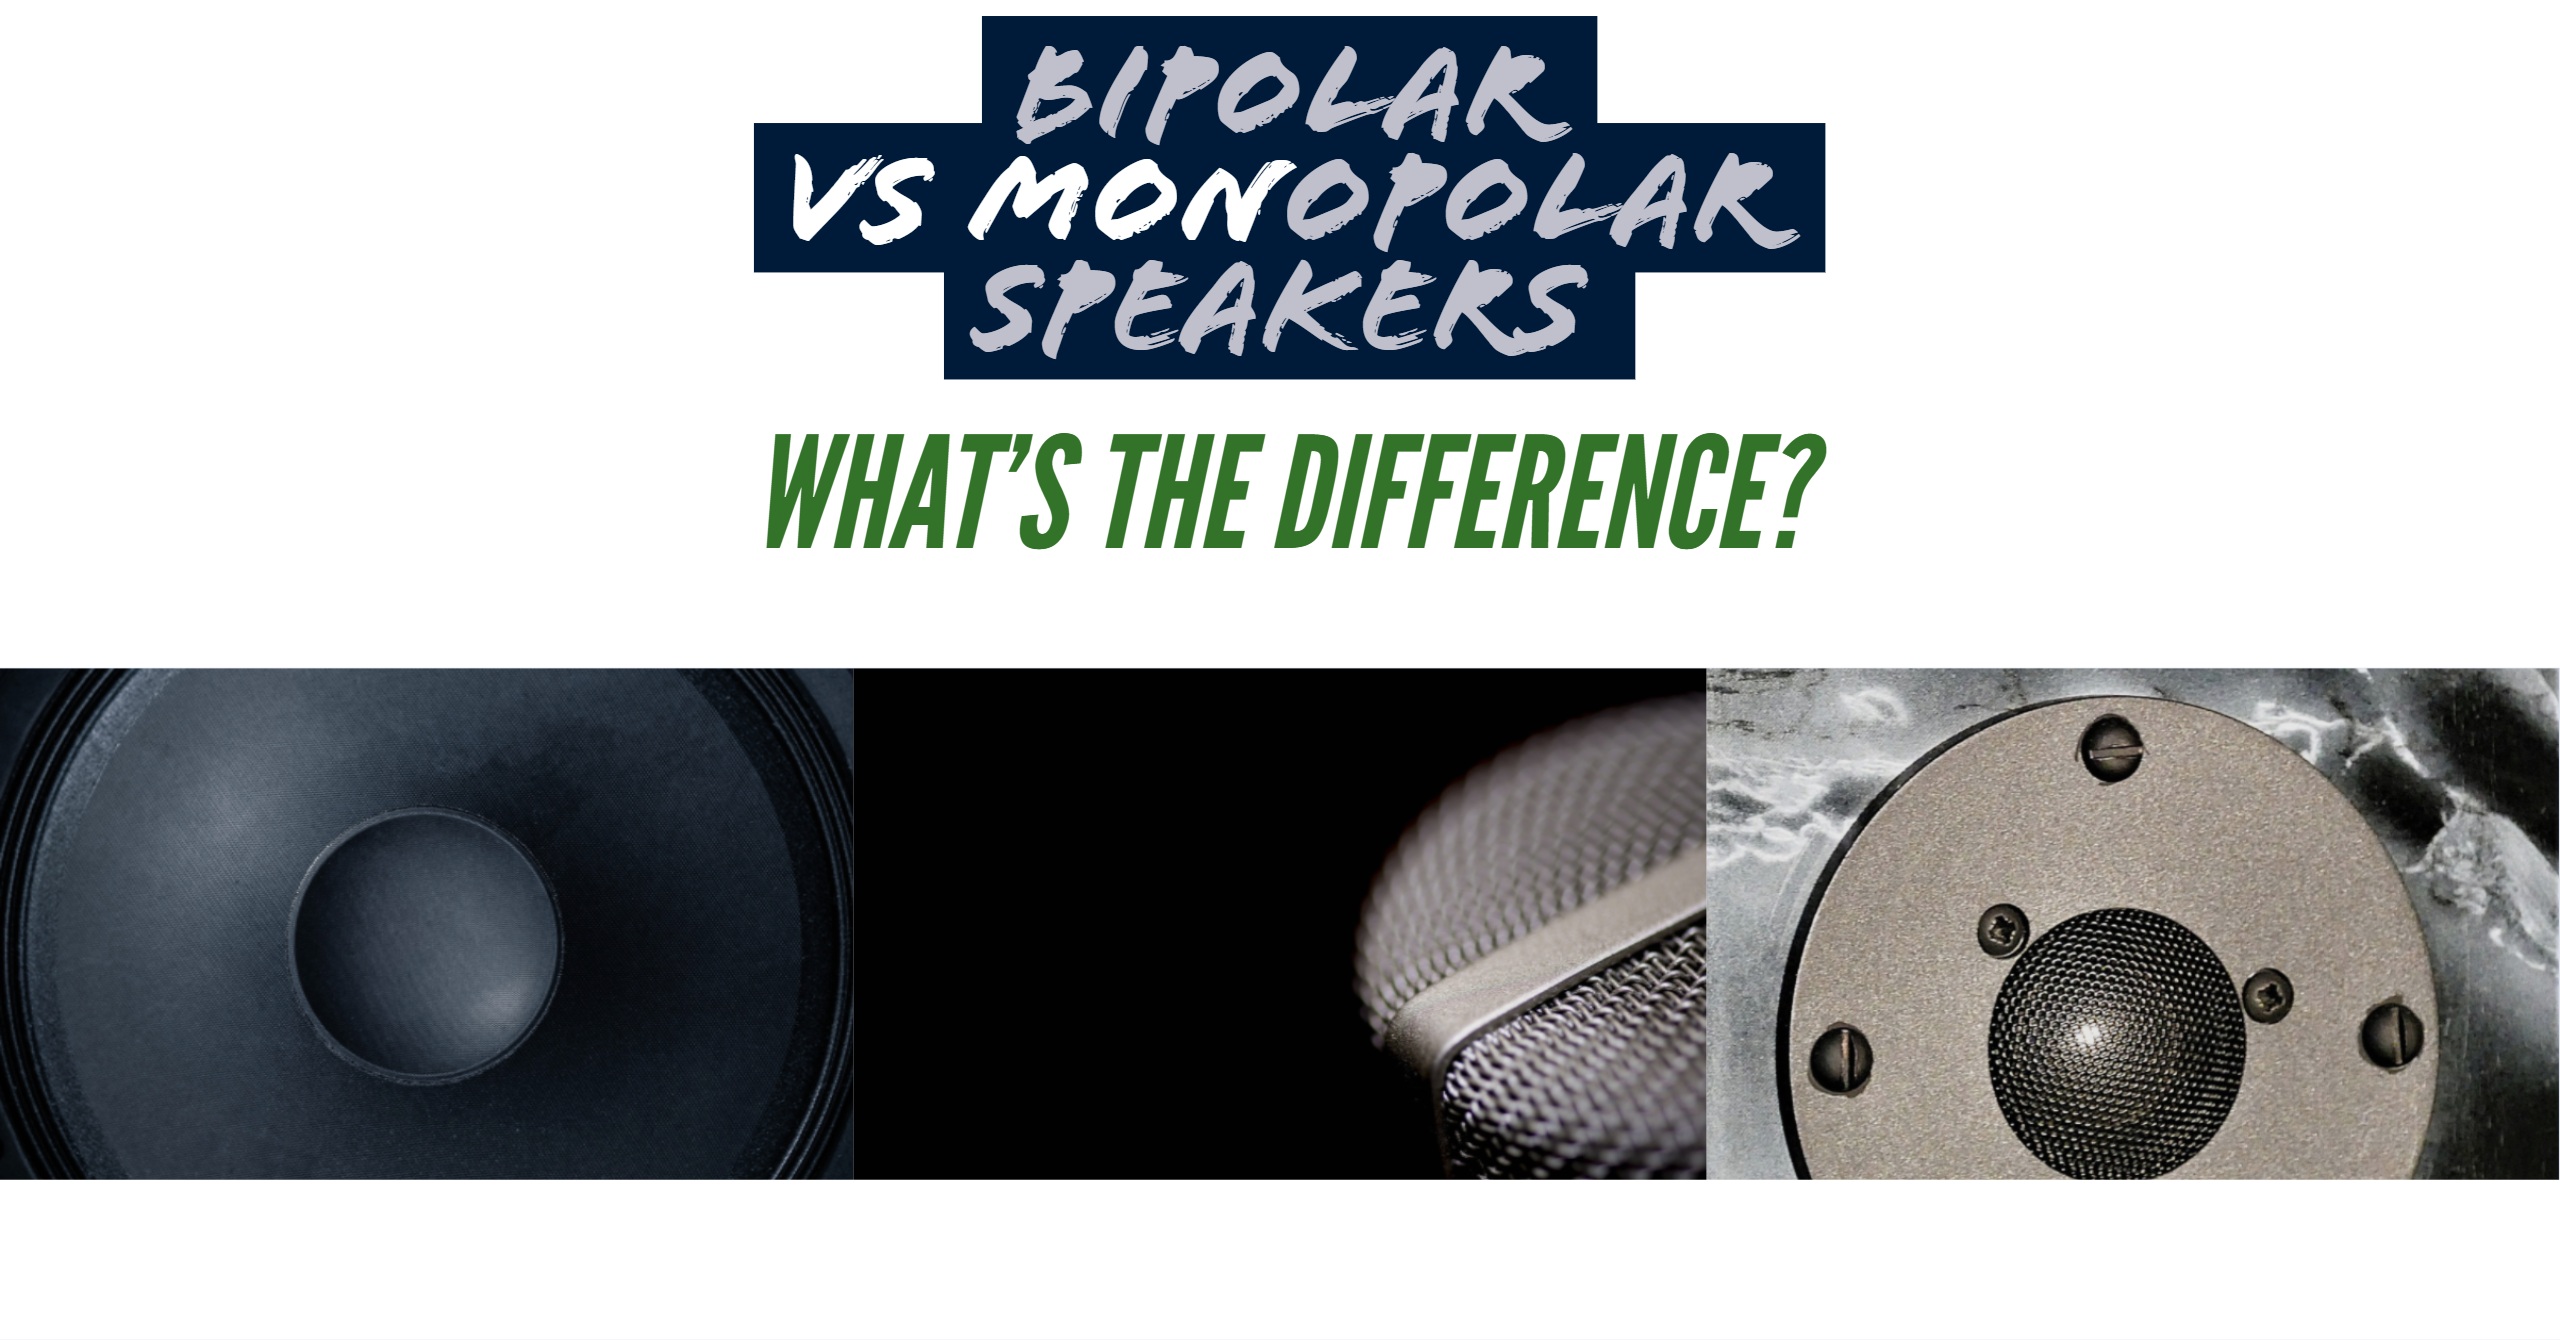 Bipolar Vs Monopolar Speakers